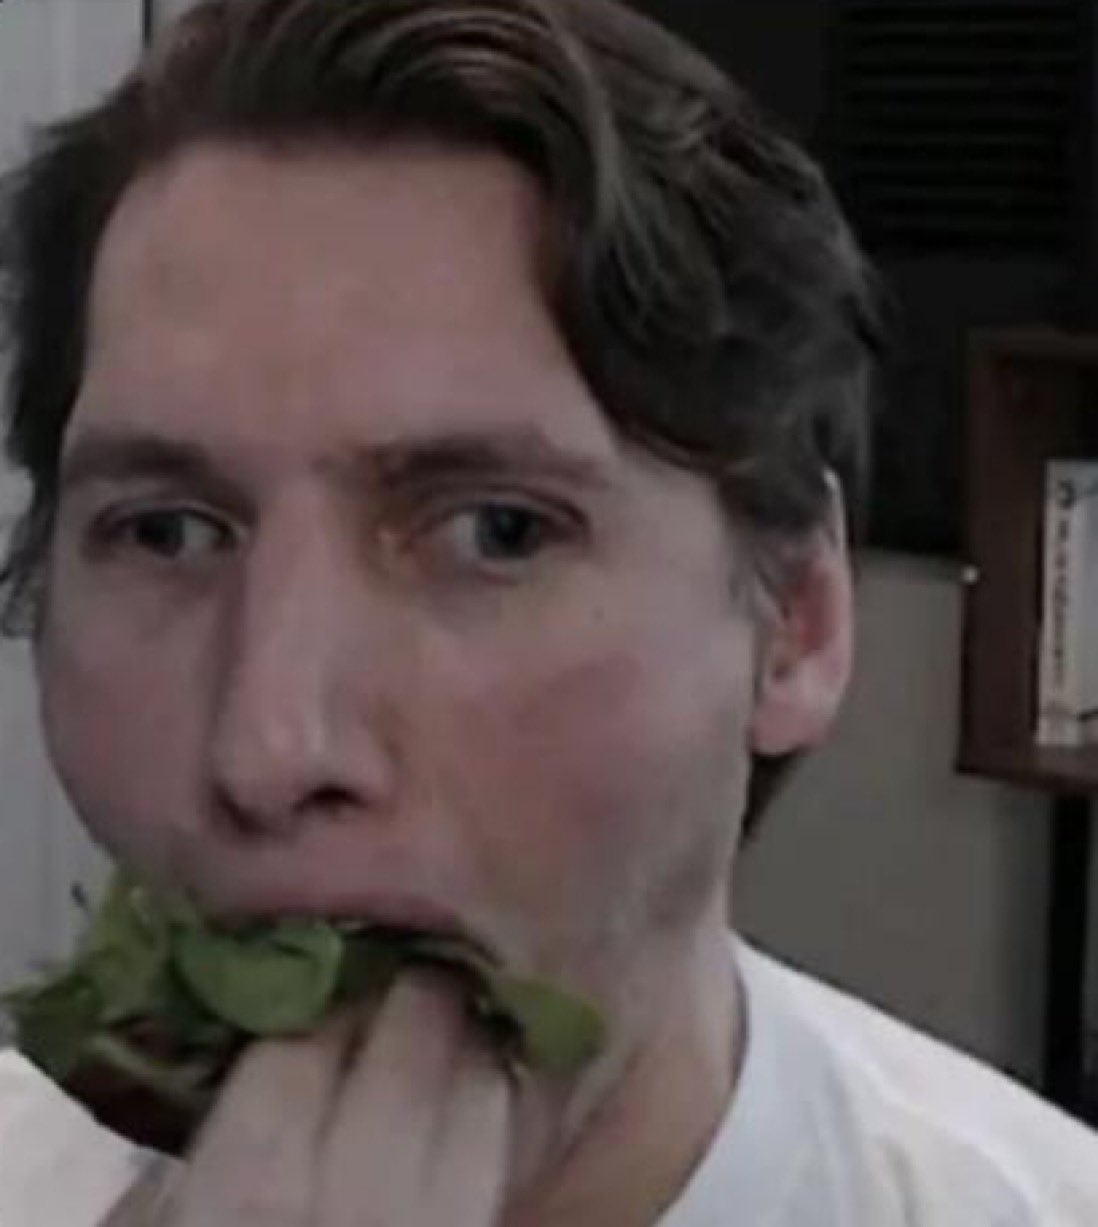 Jerma eating Lettuce Blank Meme Template